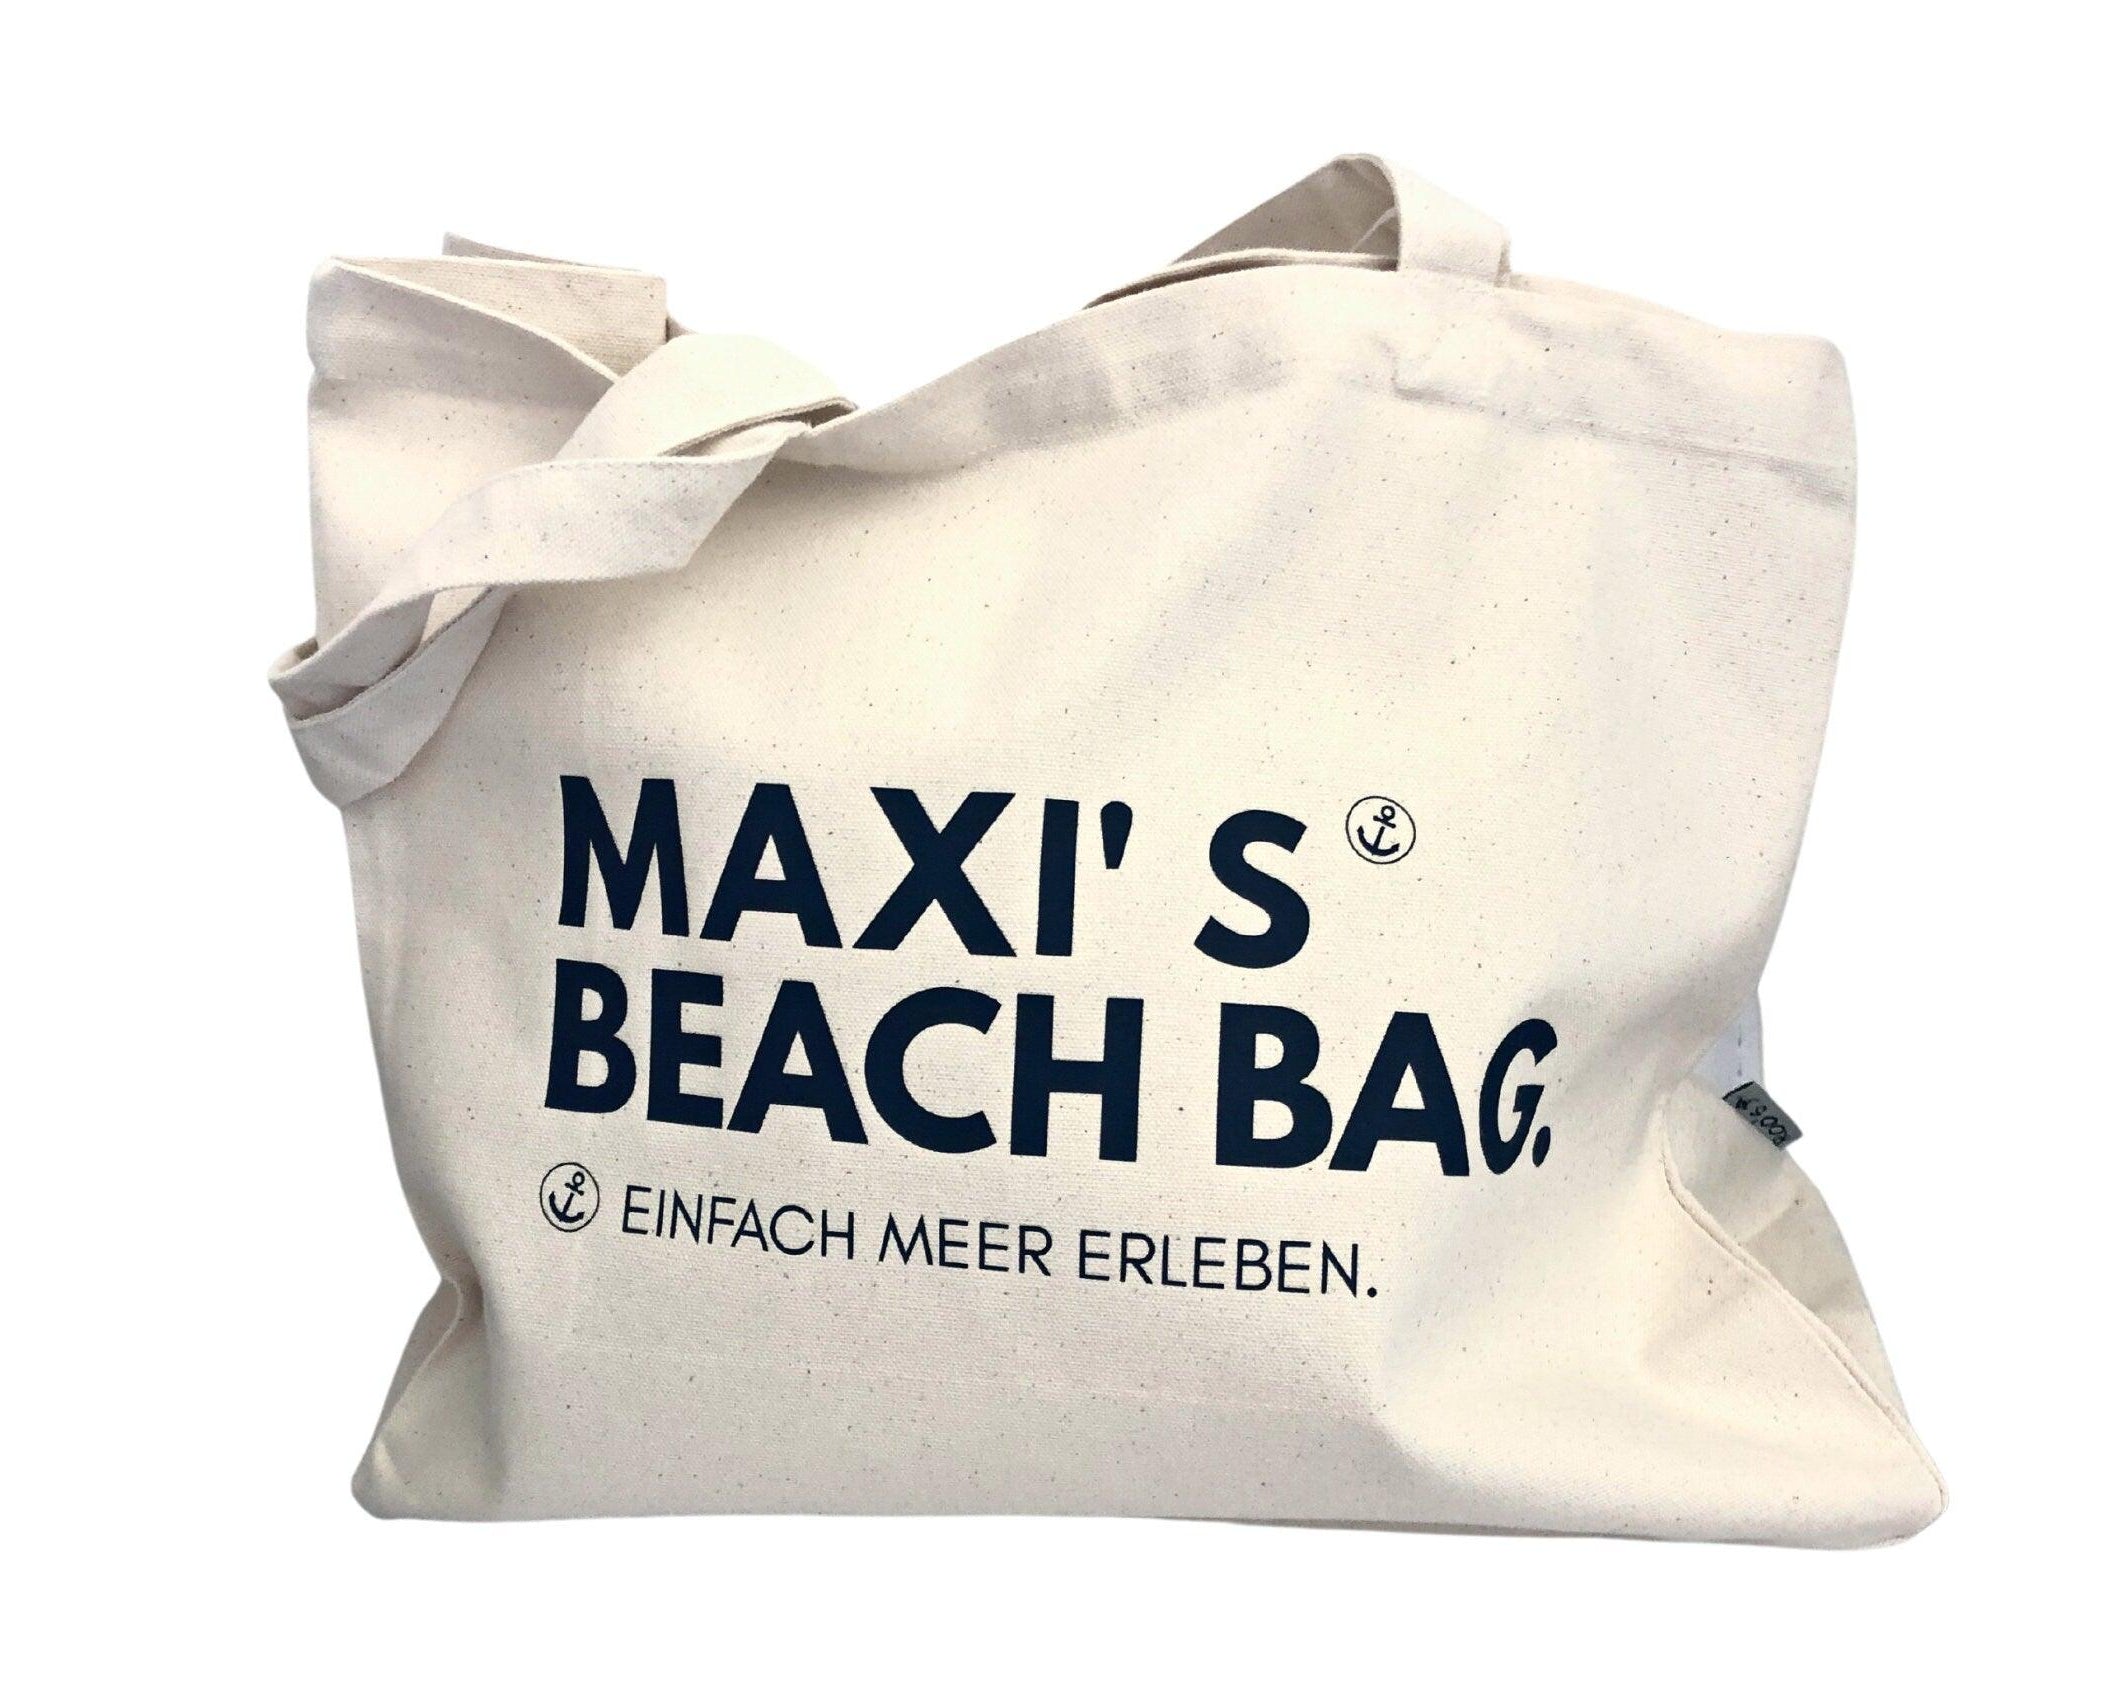 Tasche | personalisierte Strandtasche mit Namen - Roo's Gift Shop